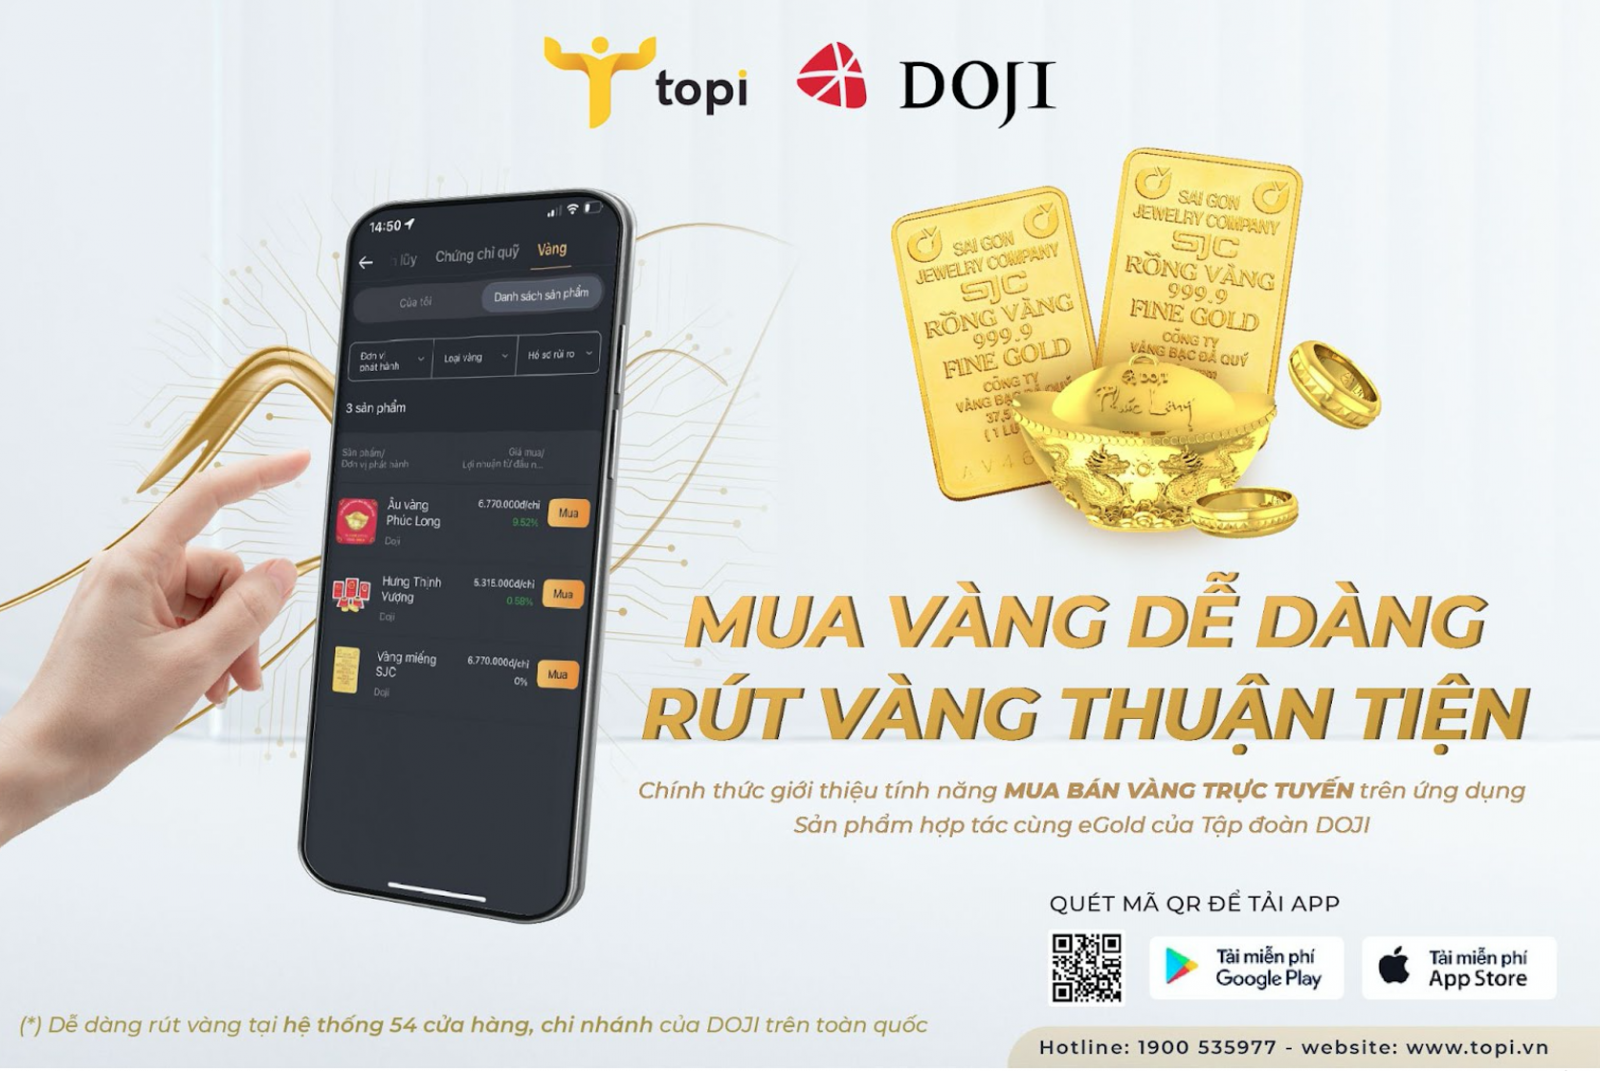 Tính năng mới trên ứng dụng giúp người dùng TOPI dễ dàng mua bán sản phẩm vàng vật chất